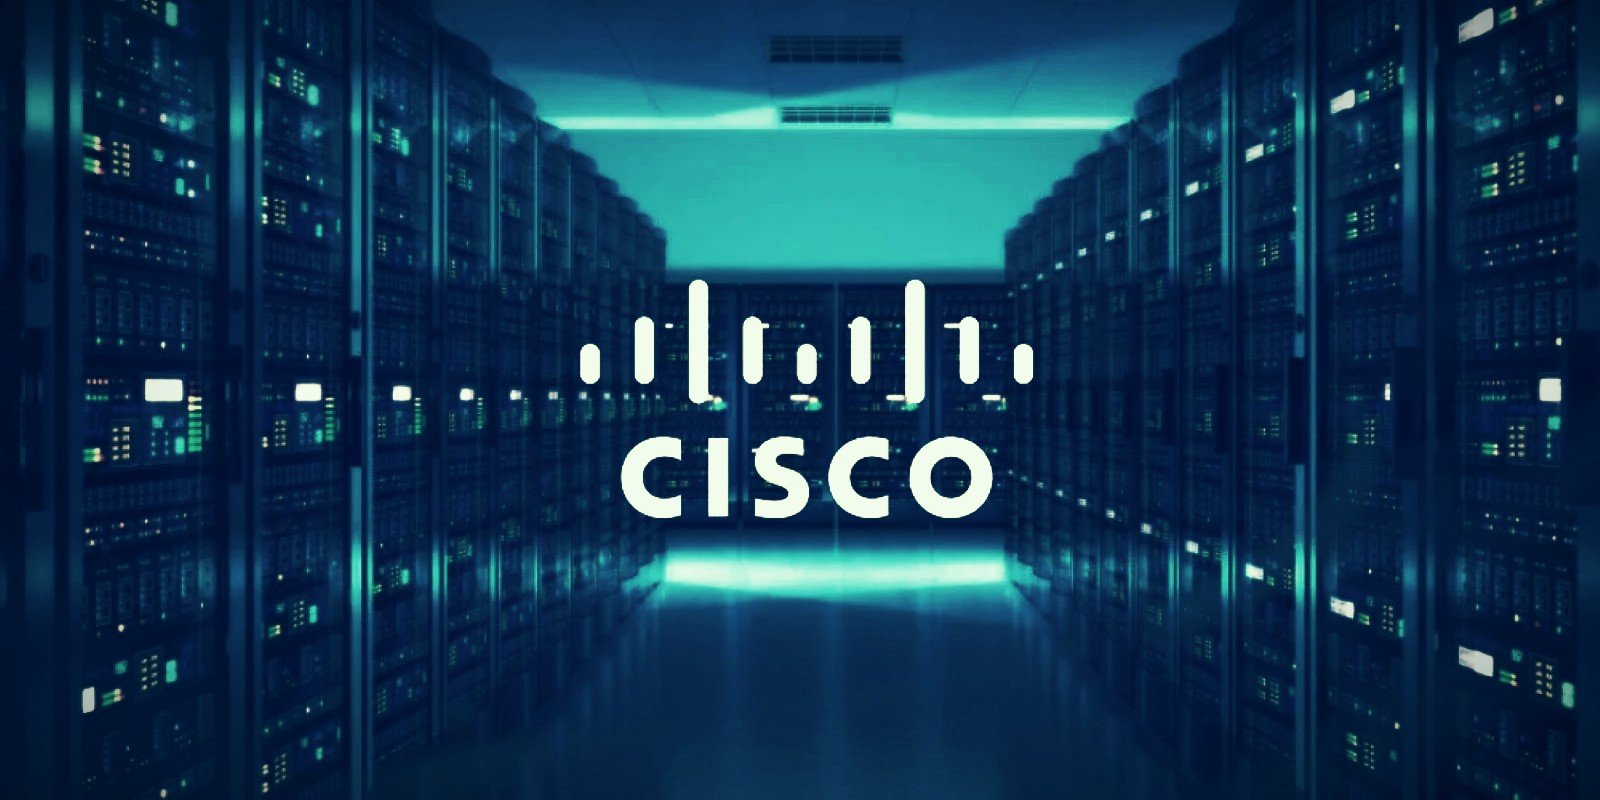 Cùng ABNET tìm hiểu về thiết bị mạng Cisco 